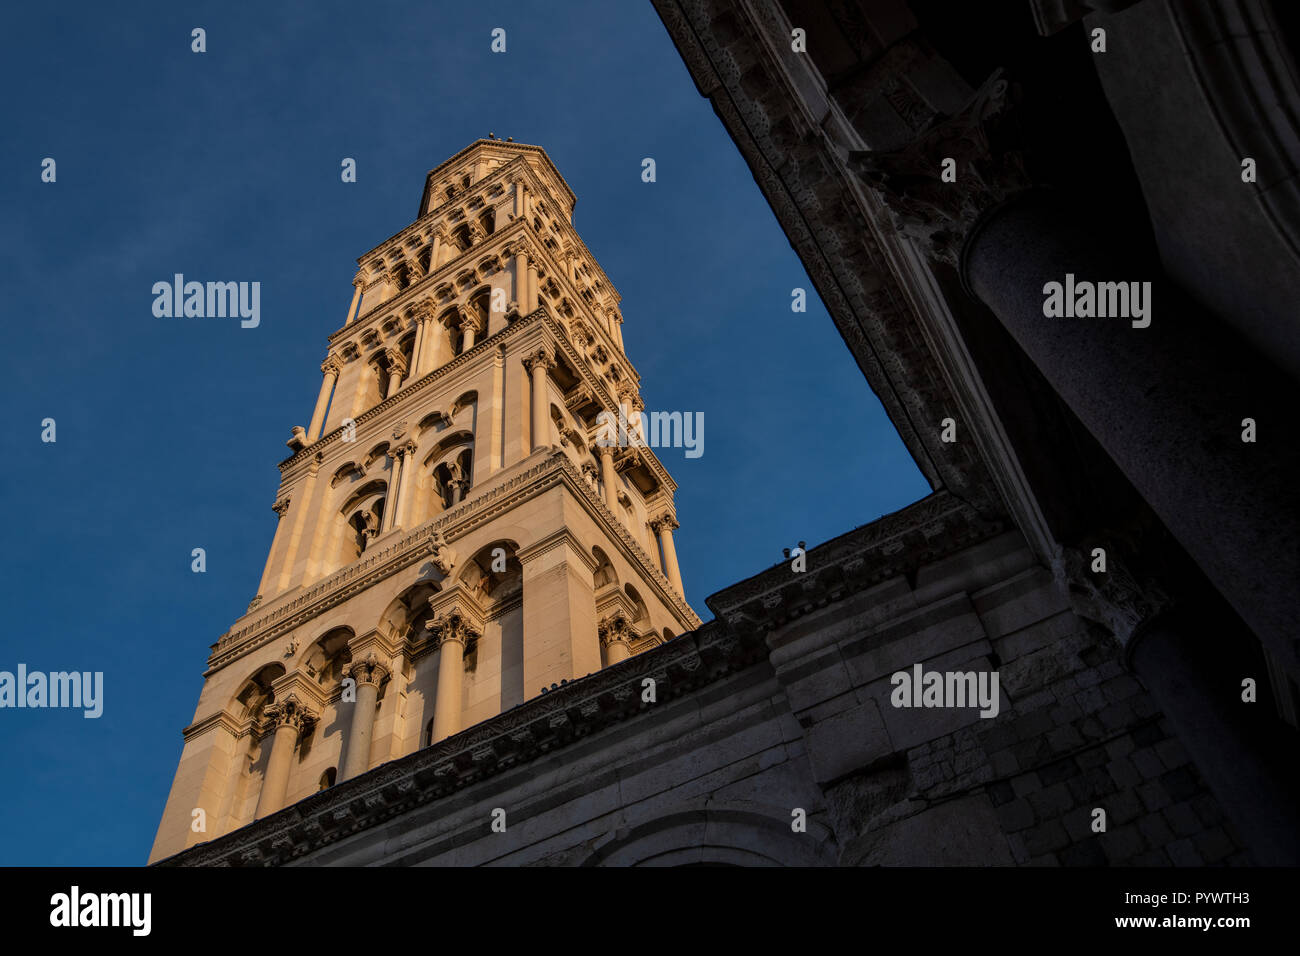 Kathedrale des Heiligen Domnius und Glockenturm, Alte Split, dem historischen Zentrum der Stadt Split, Kroatien, Peristil oder Peristil Platz. Stockfoto